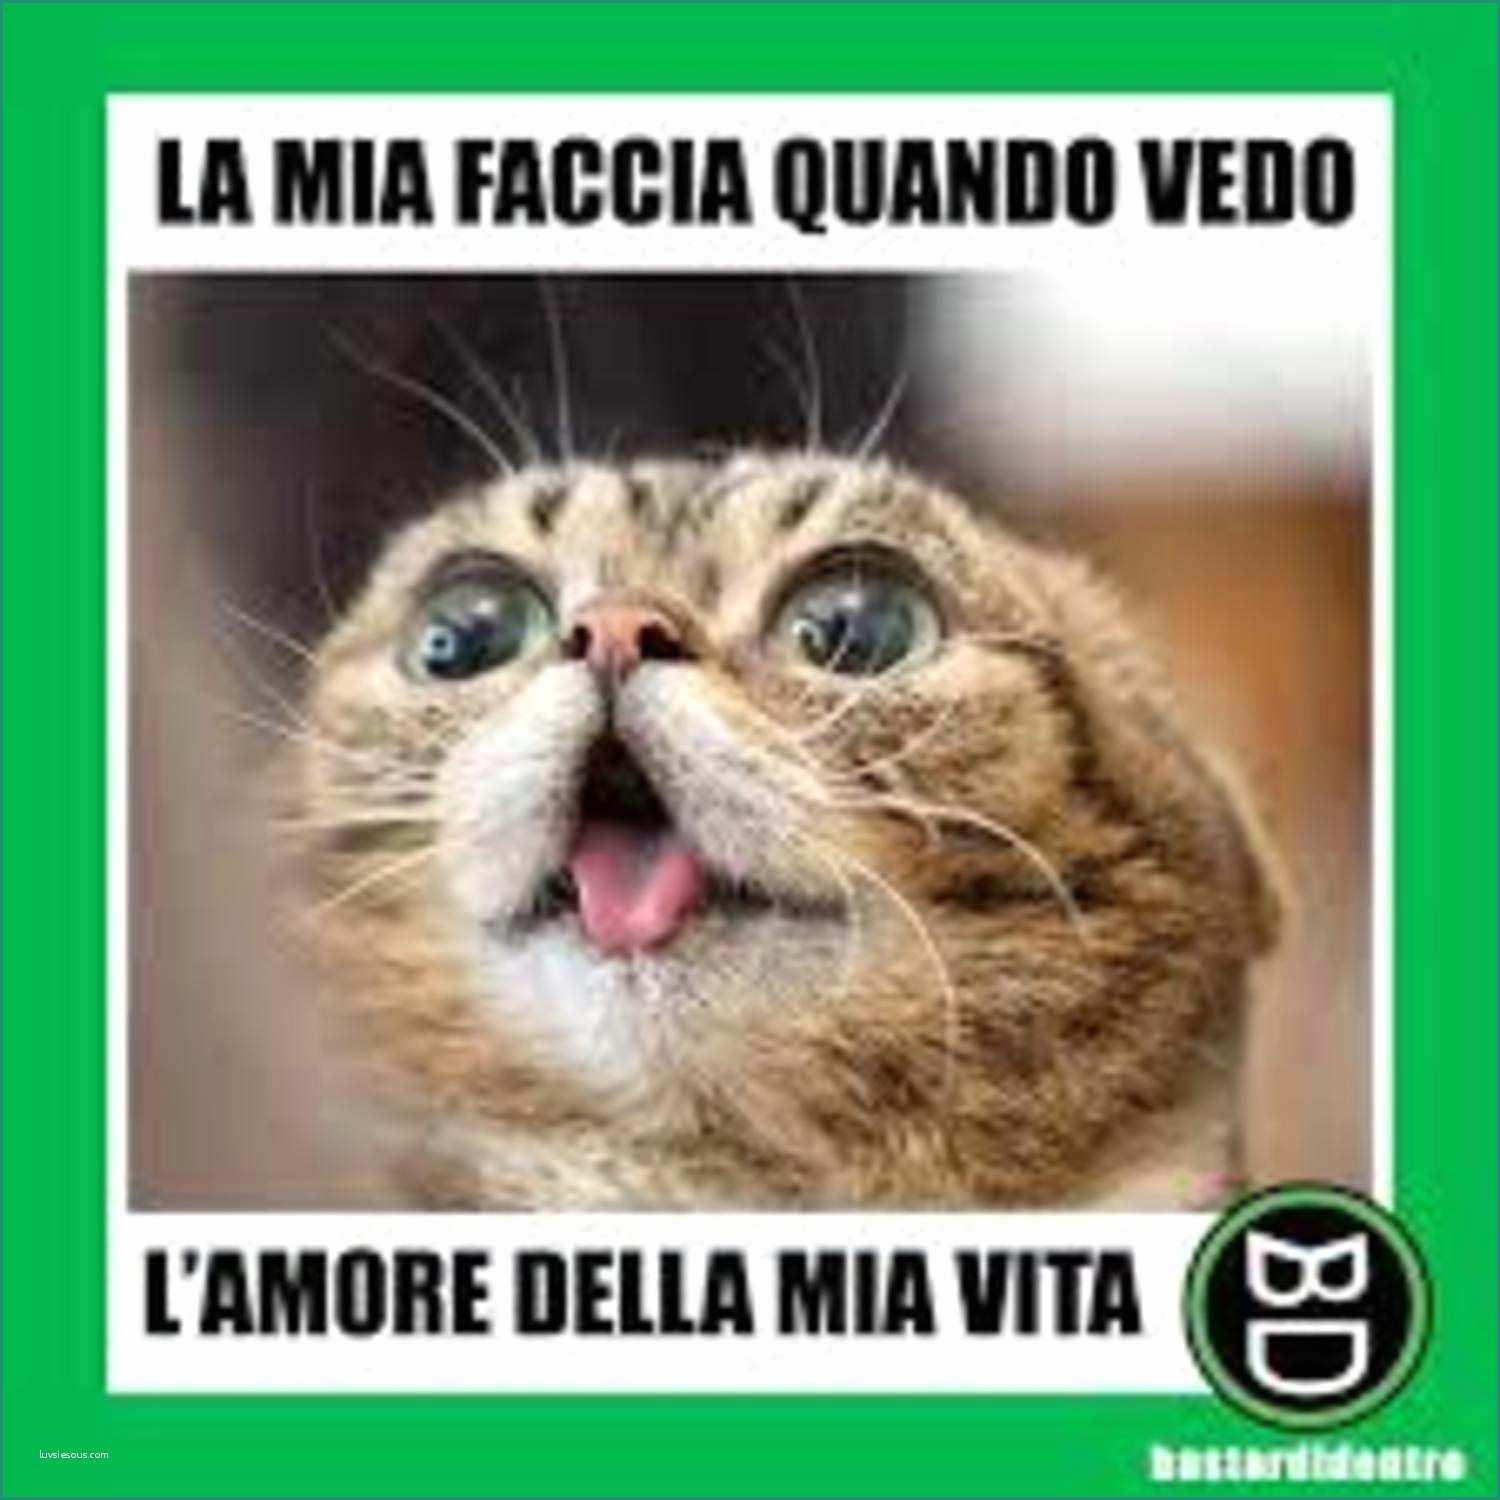 Immagini Divertenti Gratis Da Scaricare E Meme Italiano Animali Divertenti Che Fanno Ridere